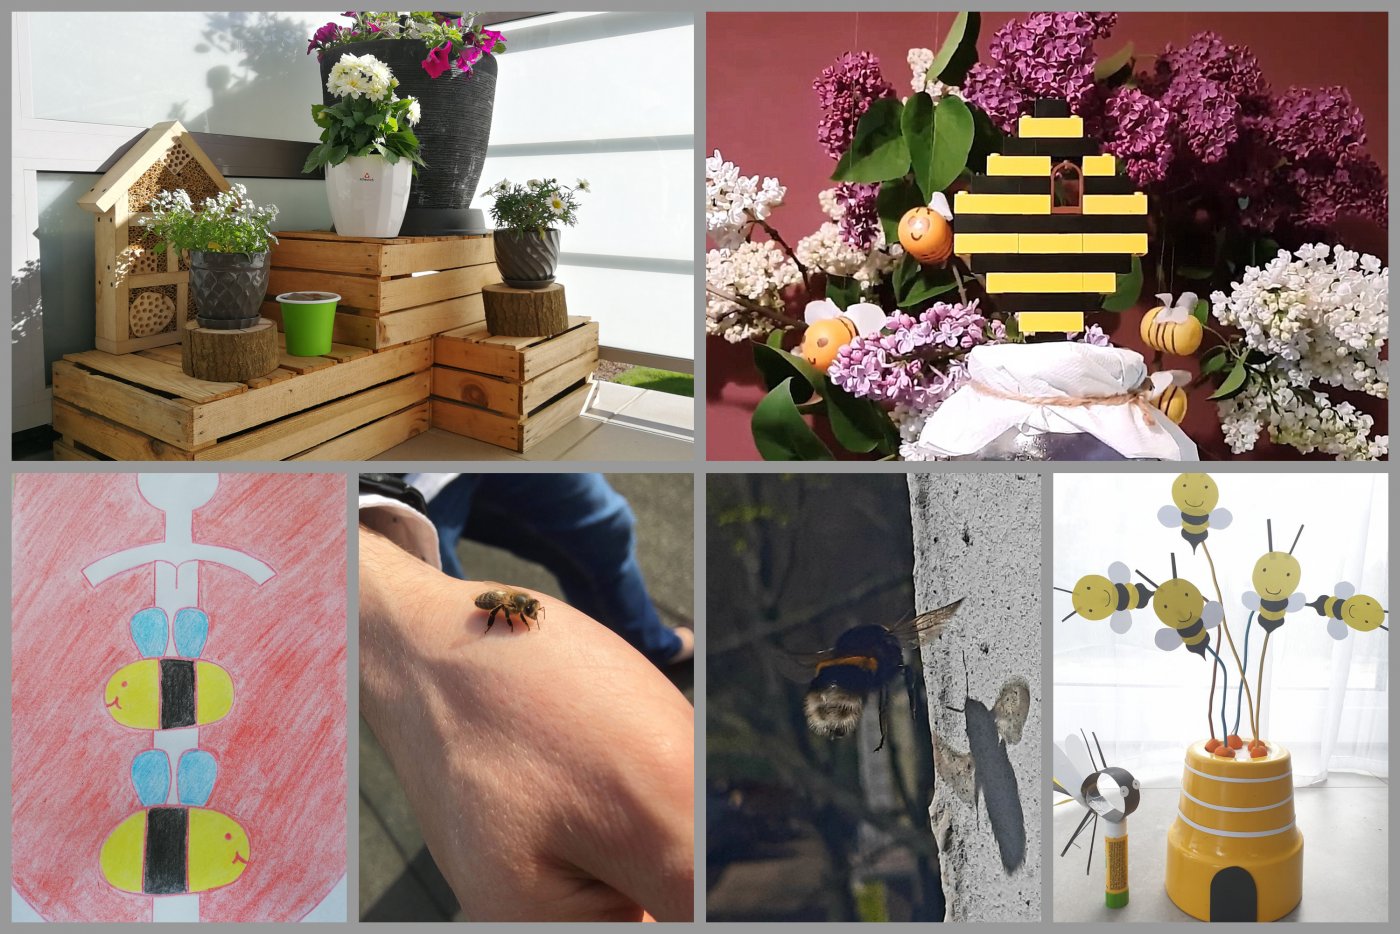 fot. materiały z konkursu „Gdzie możesz spotkać pszczołę?”